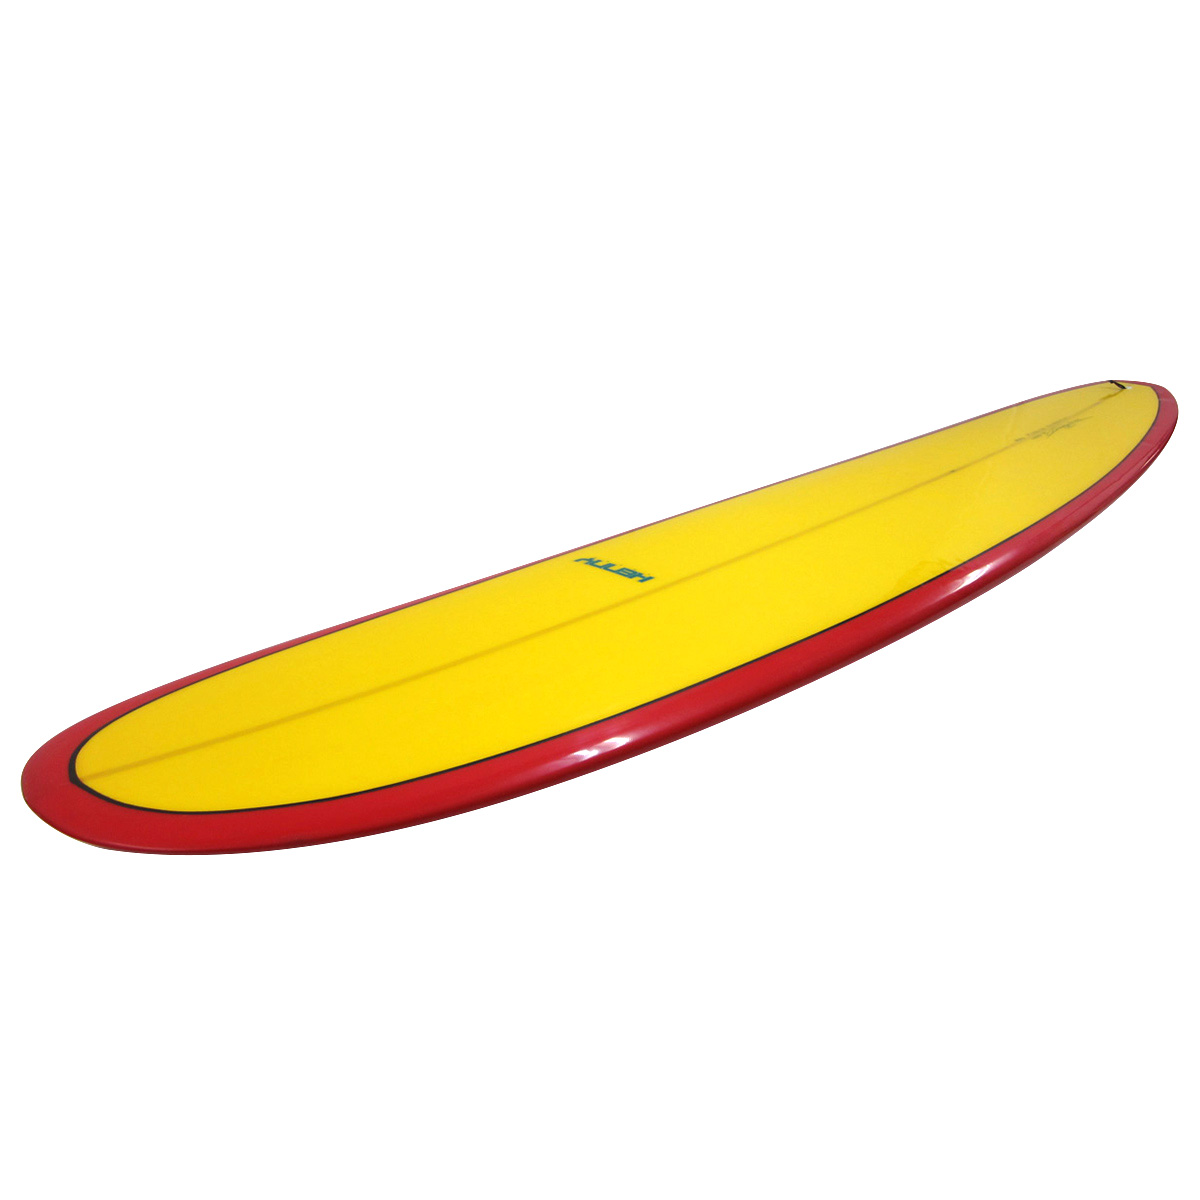 KENNY SURFBOARDS / CUSTOM 9`6